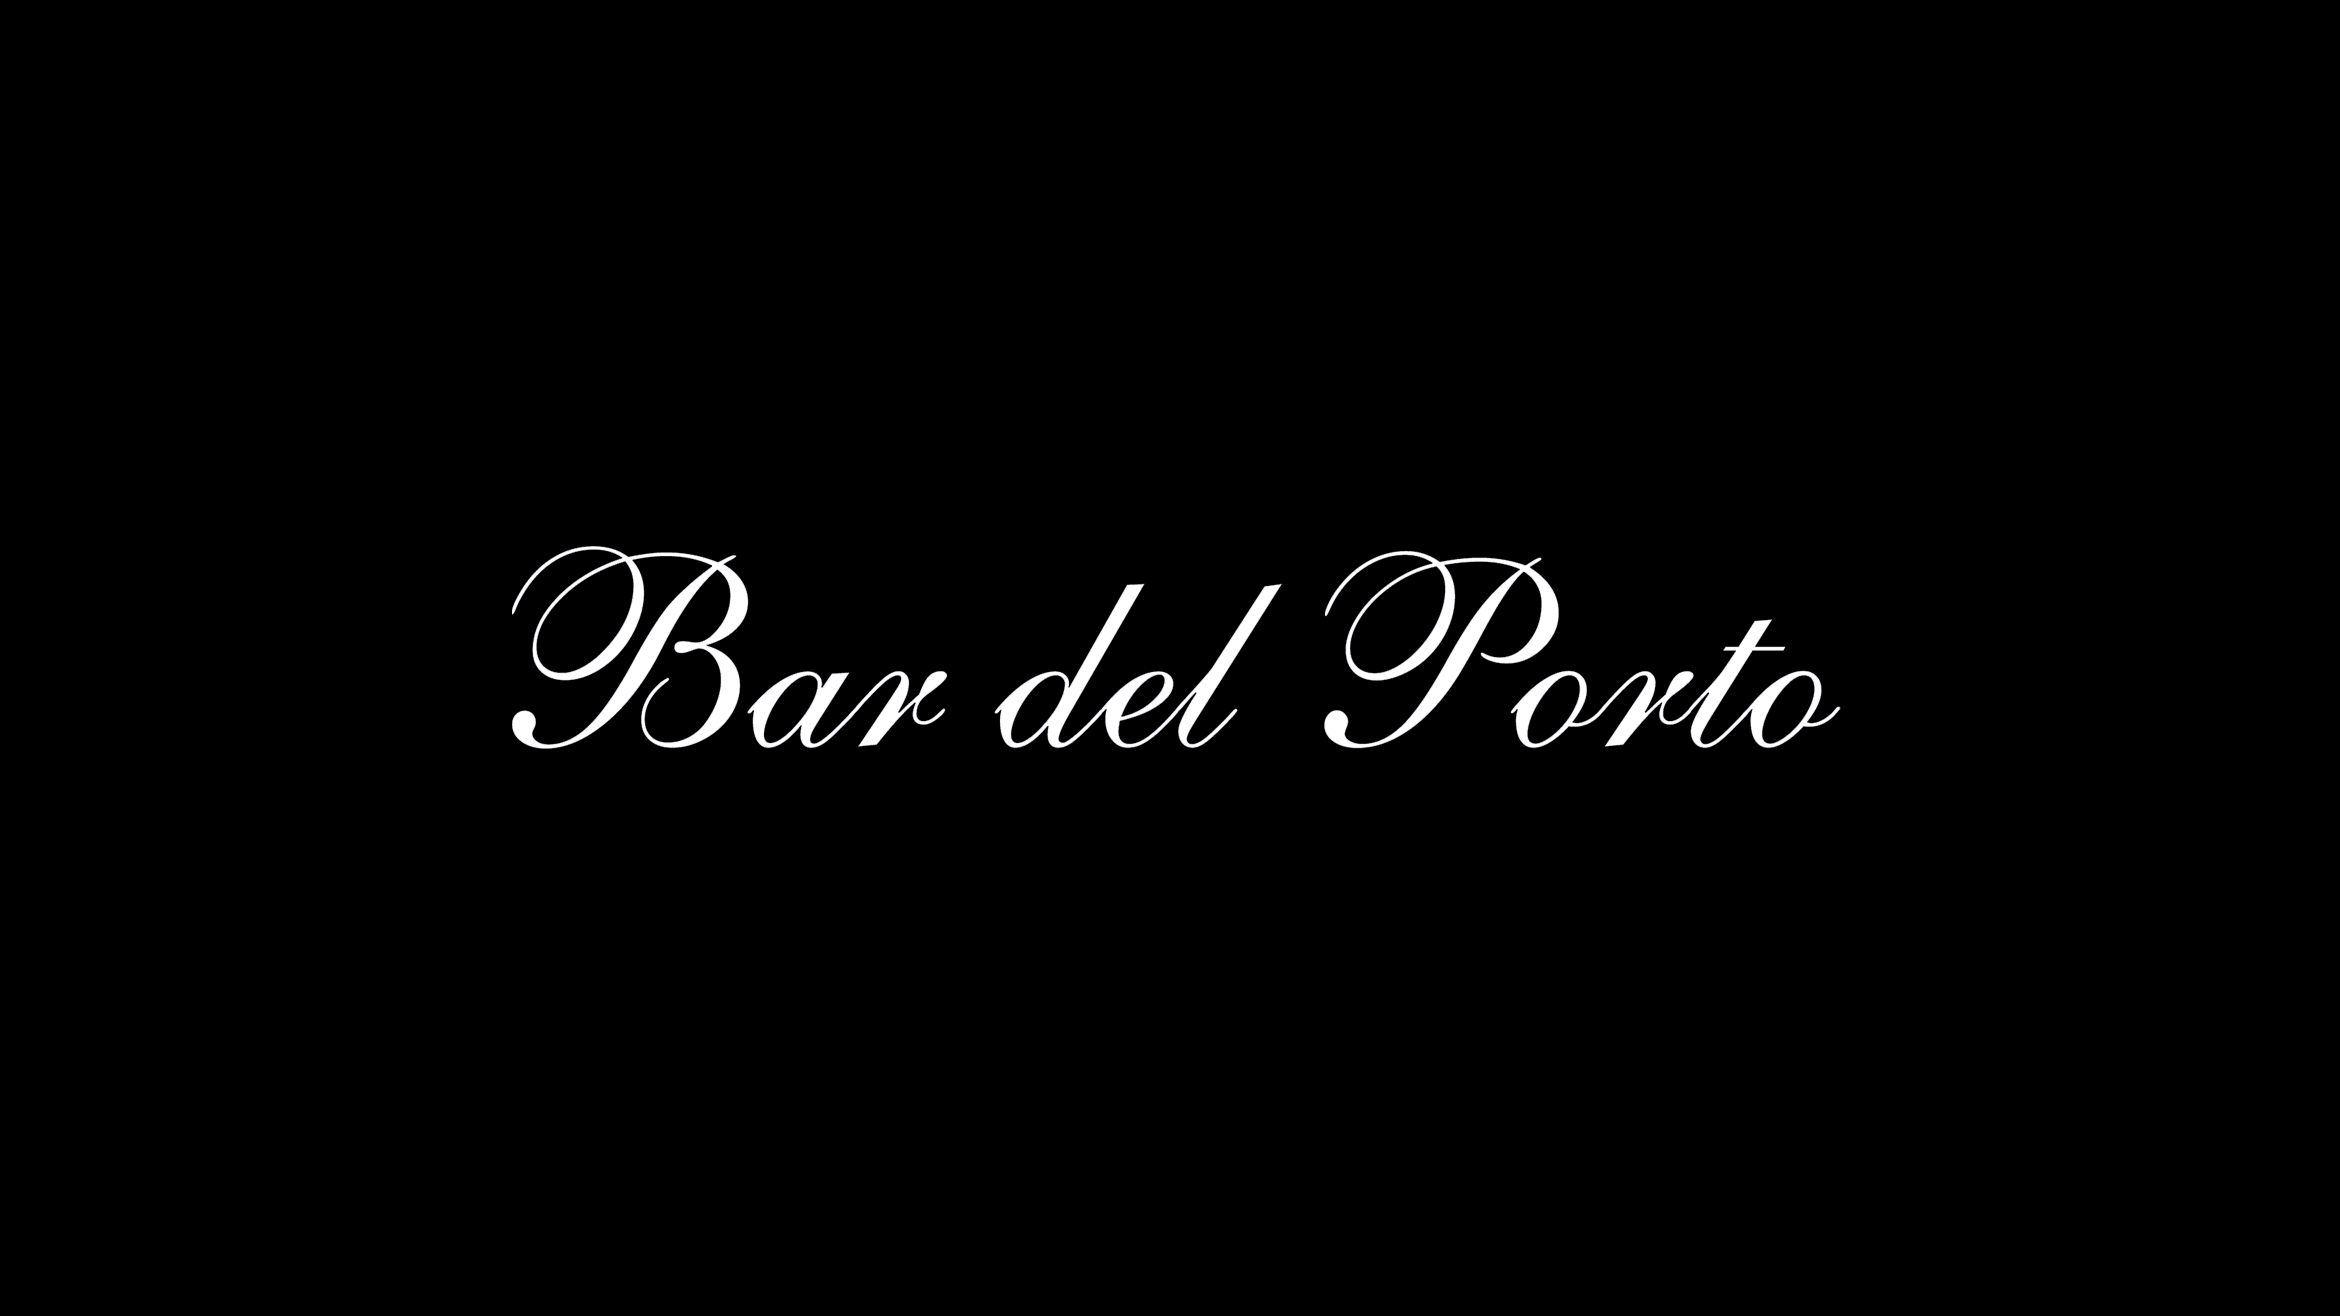 bardelporto-logo2